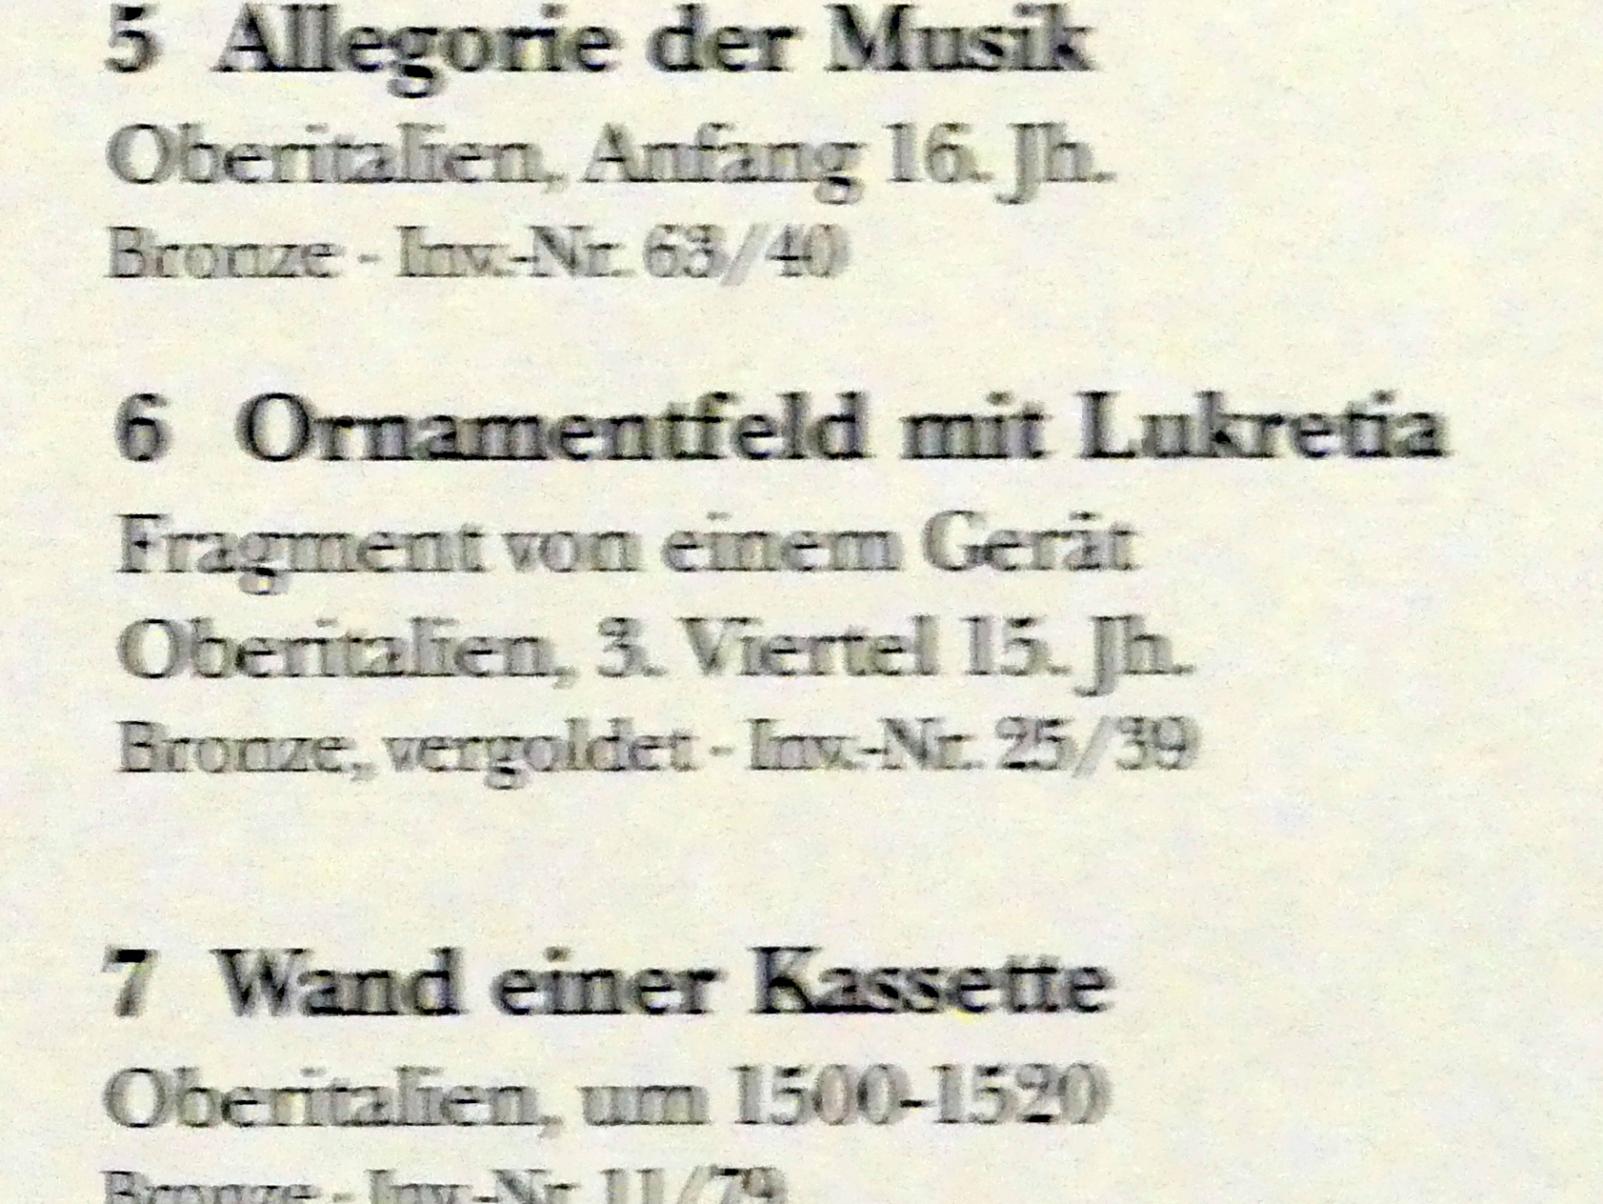 Ornamentfeld mit Lukretia, München, Bayerisches Nationalmuseum, Saal 23, 3. Viertel 15. Jhd., Bild 2/2